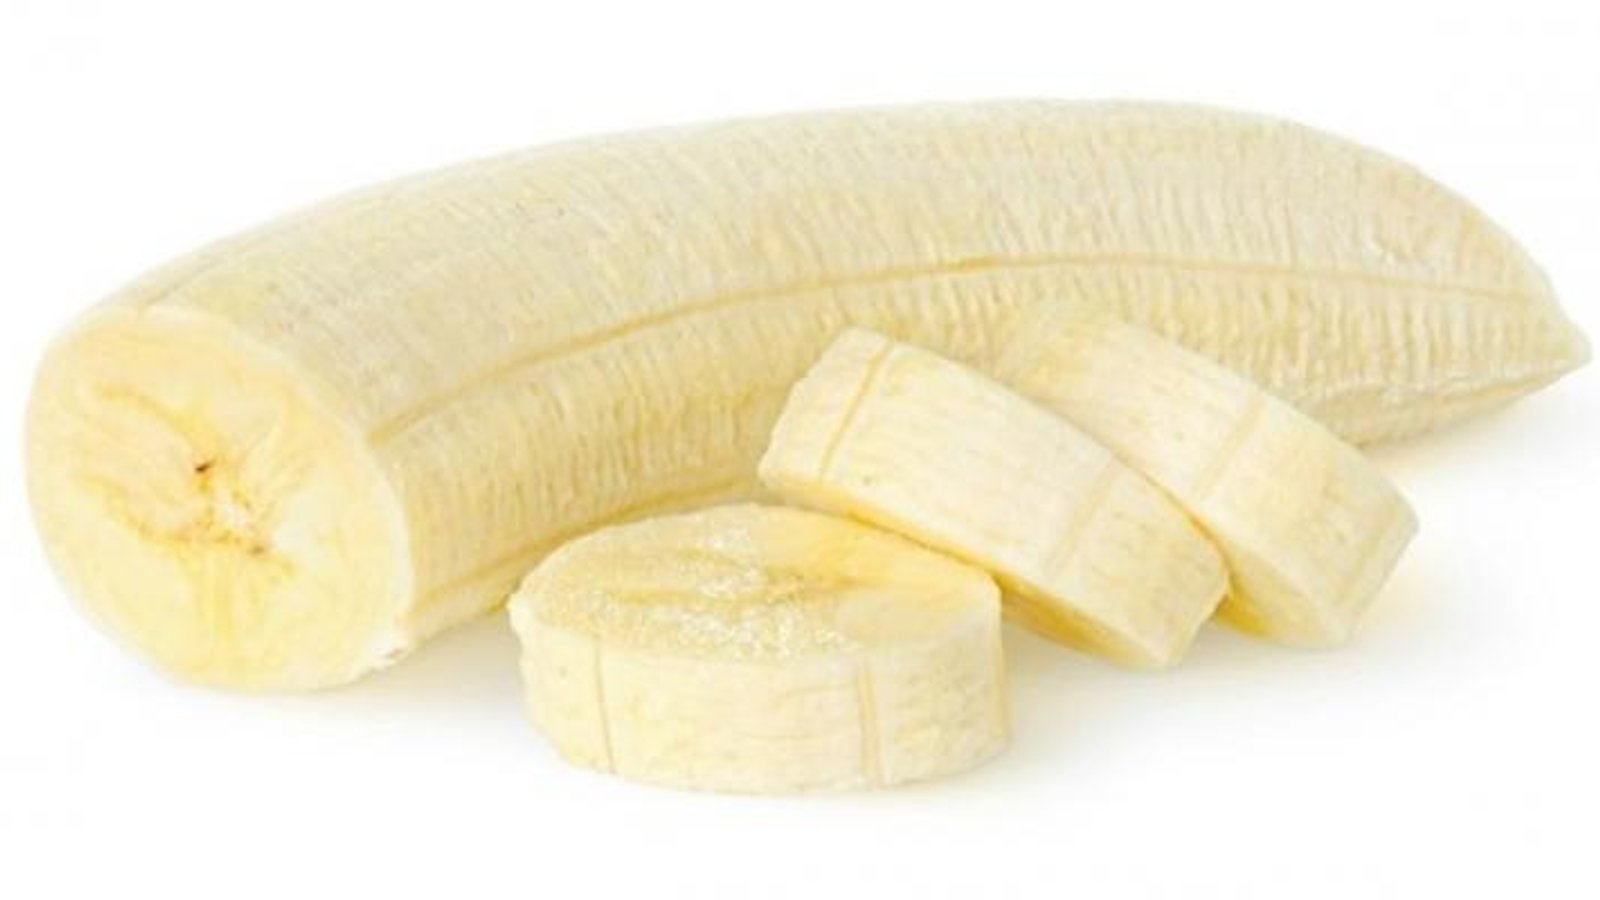 Cette astuce pour conserver les bananes vous permettra de faire de magnifiques desserts pour Noël! 